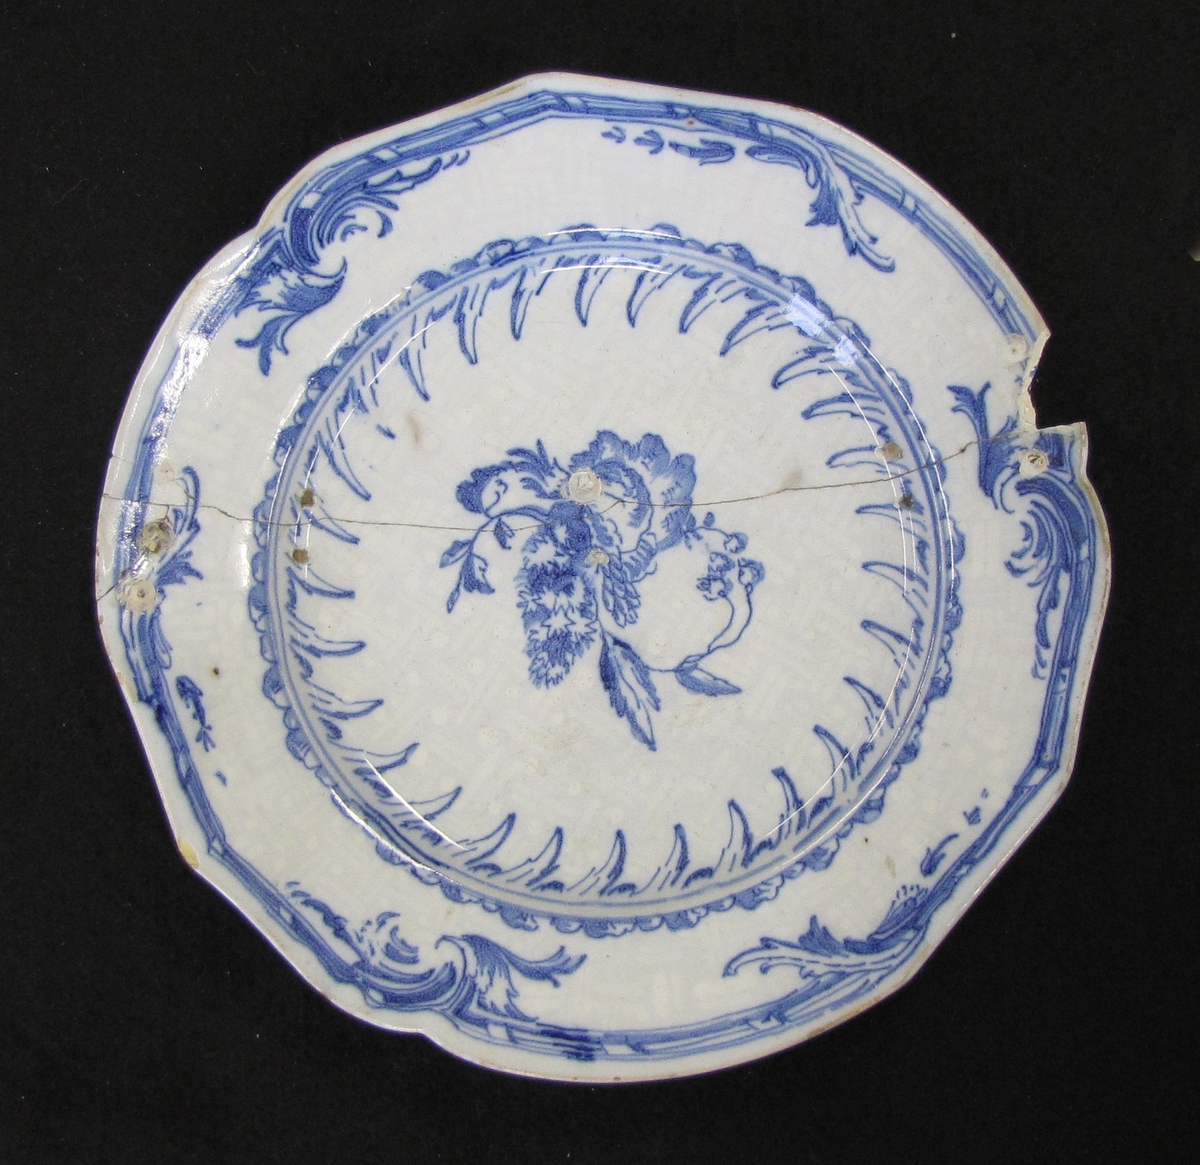 Tallrik av fajans med ''Rehnska mönstret'' i blått, komponerat av Jean Eric Rehn, på bianco sopra bianco-botten (blågrå botten med vitt mönster).


 Rehnska mönstret består av "en sinnrikt och rytmiskt svingad rokokobordyr och därtill ett centrumstycke i form av ett blomster- eller fruktmotiv, som liknar ett söndersprunget granatäpple." 

Citatet ovan är hämtat från Hannover, Emil "Keramisk handbok. Första delen. Fajans - majolika - stengods" (Stockholm 1919), s. 467 - 468. På s. 468 i samma bok står bl.a. följande: "Första gången rokokobordyren uppträder är på en servis från 1745. Där är granatäpplet ersatt av Adolf Fredriks namnchiffer med en krona över. Också med olika adliga vapen i stället för granatäpplet förekommer det Rhenska mönstret, som överhuvud taget finns varierat på mångahanda sätt. Det uppträder så t.ex. manganmålat i stället för blåmålat och som blåmålat ofta på sopra bianco-botten. I bortåt trettio år upprepades det oupphörligt i Rörstrands fabrik - märkvärdigt nog utan att mista synnerligen mycket av sin rena och vackra rokokokaraktär."

Signerad: St. 2/5 1762

                    16......(?)

Tallriken sprucken och lagad med krampor. Bitar slagna ur kanten men fastlimmade. Tallriken inköptes

av ägarens far Christian Aarsrud (18 - 19) disponent vid Mustafors, Dalsland.



Bilaga: Värderingsintyg'